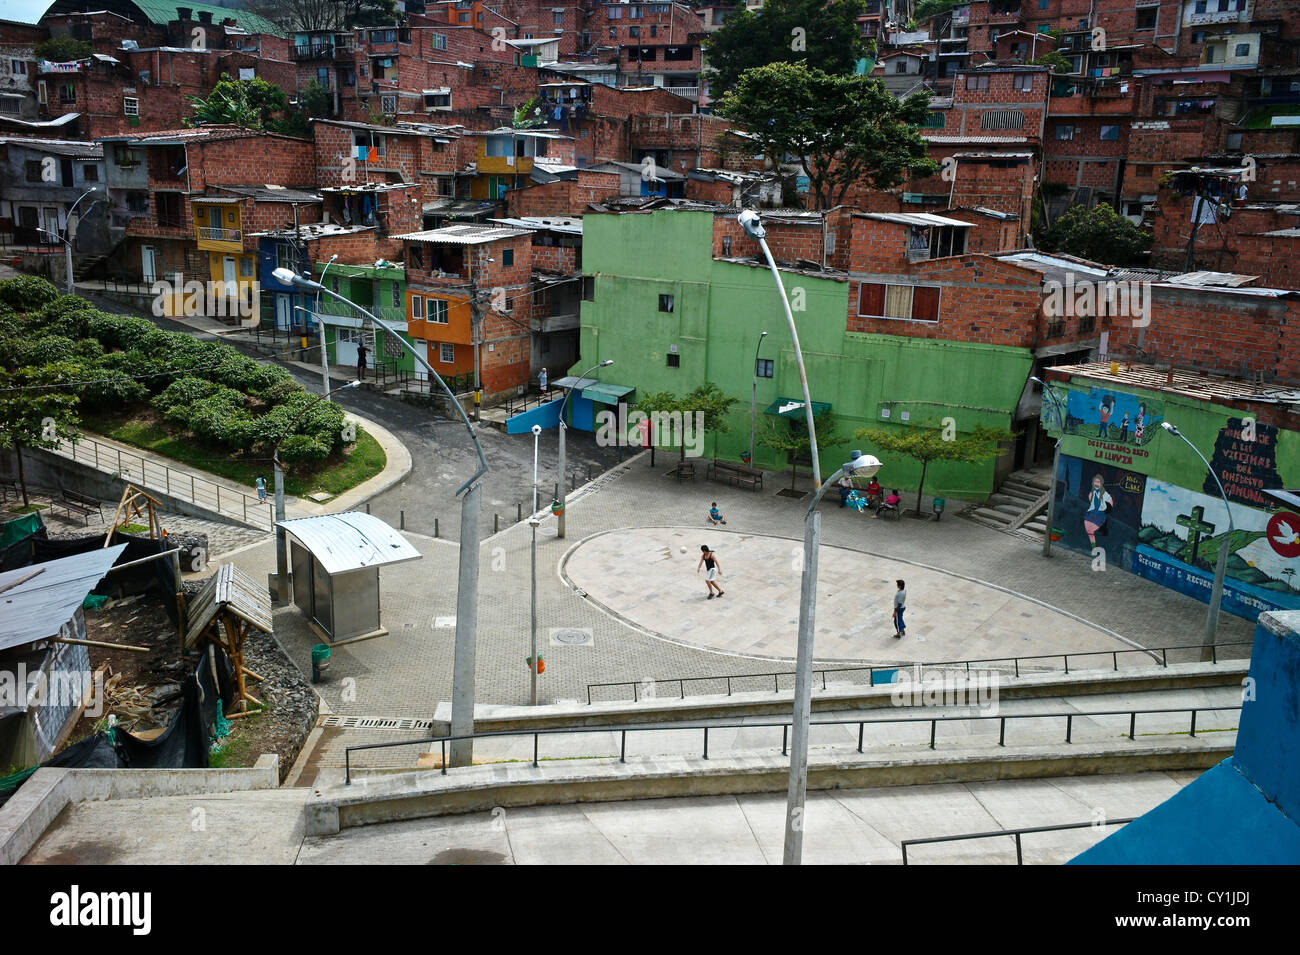 The hillside community of Santo Domingo in Medellin also known as Comunas. Stock Photo